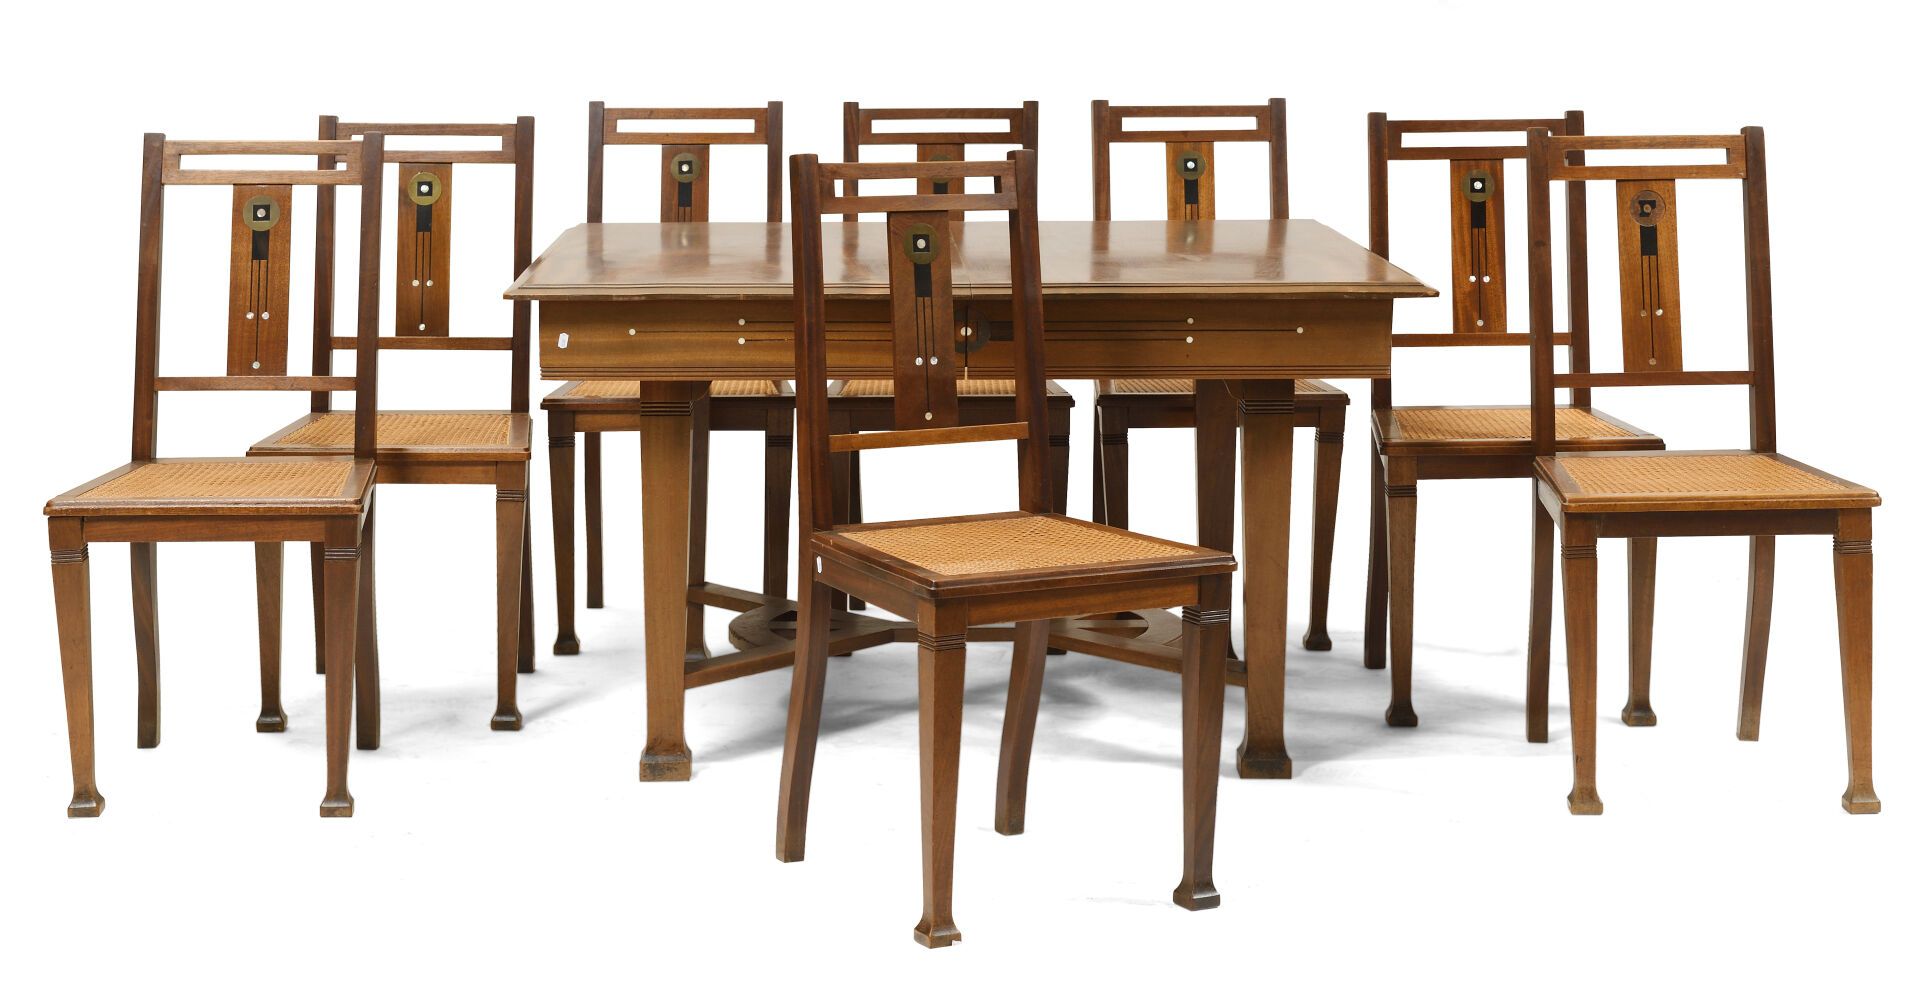 Null 按照古斯塔夫-塞鲁里耶-博维（1858-1910）的品味。 
红木餐厅家具，用黄铜，异国情调的木材，象牙和珍珠母镶嵌的几何装饰，包括：
- 一个几何形&hellip;